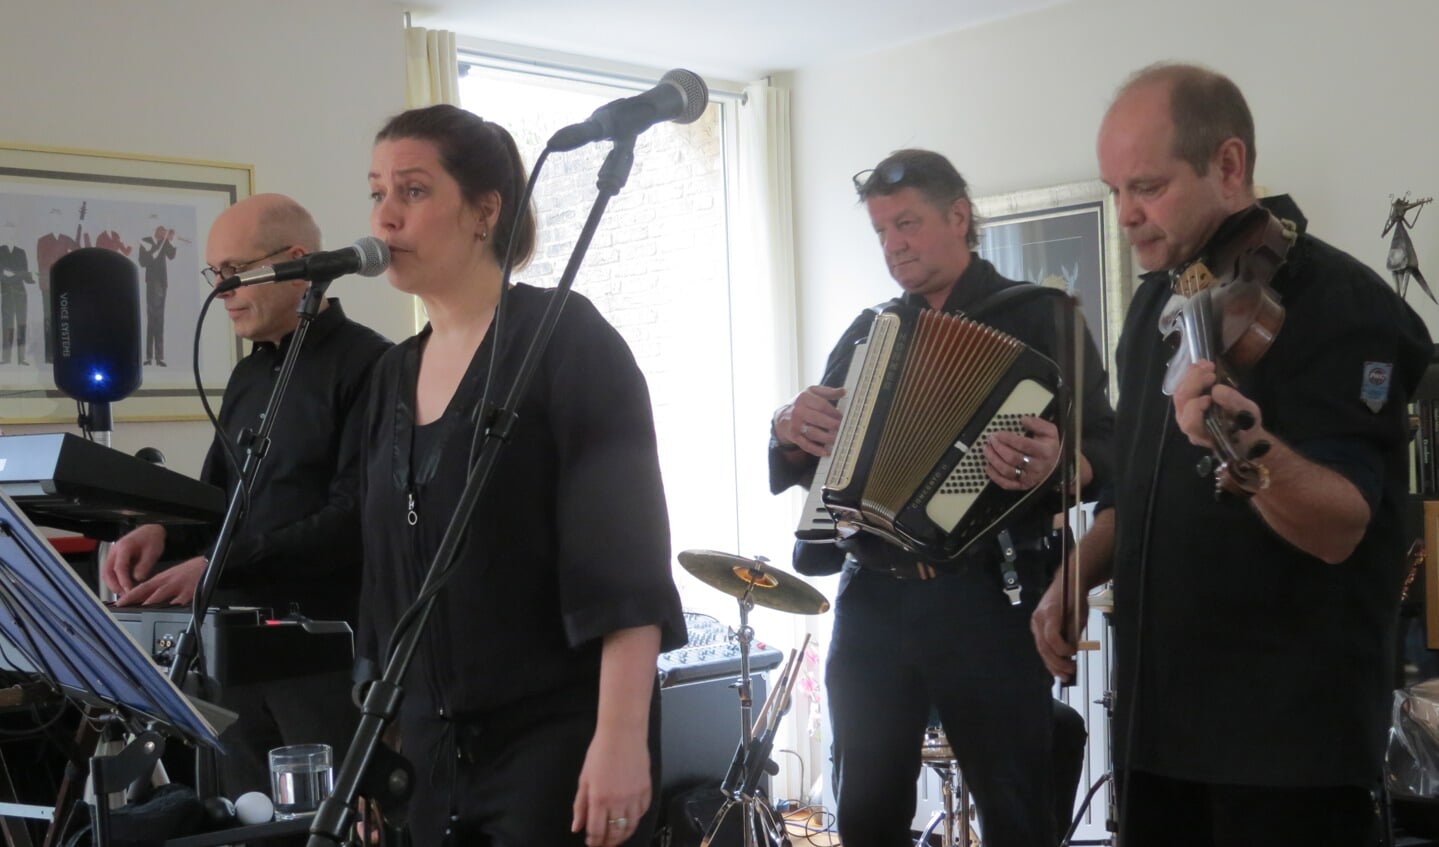 De band De Buren trad onder grote belangstelling op met minder bekende nummers van bekende artiesten in het huis van Lizzie Kronemeijer en Mark van Nesselrooij, Valklaan 6 Bilthoven. De band trad op met verrassende pareltjes van de popmuziek.  

